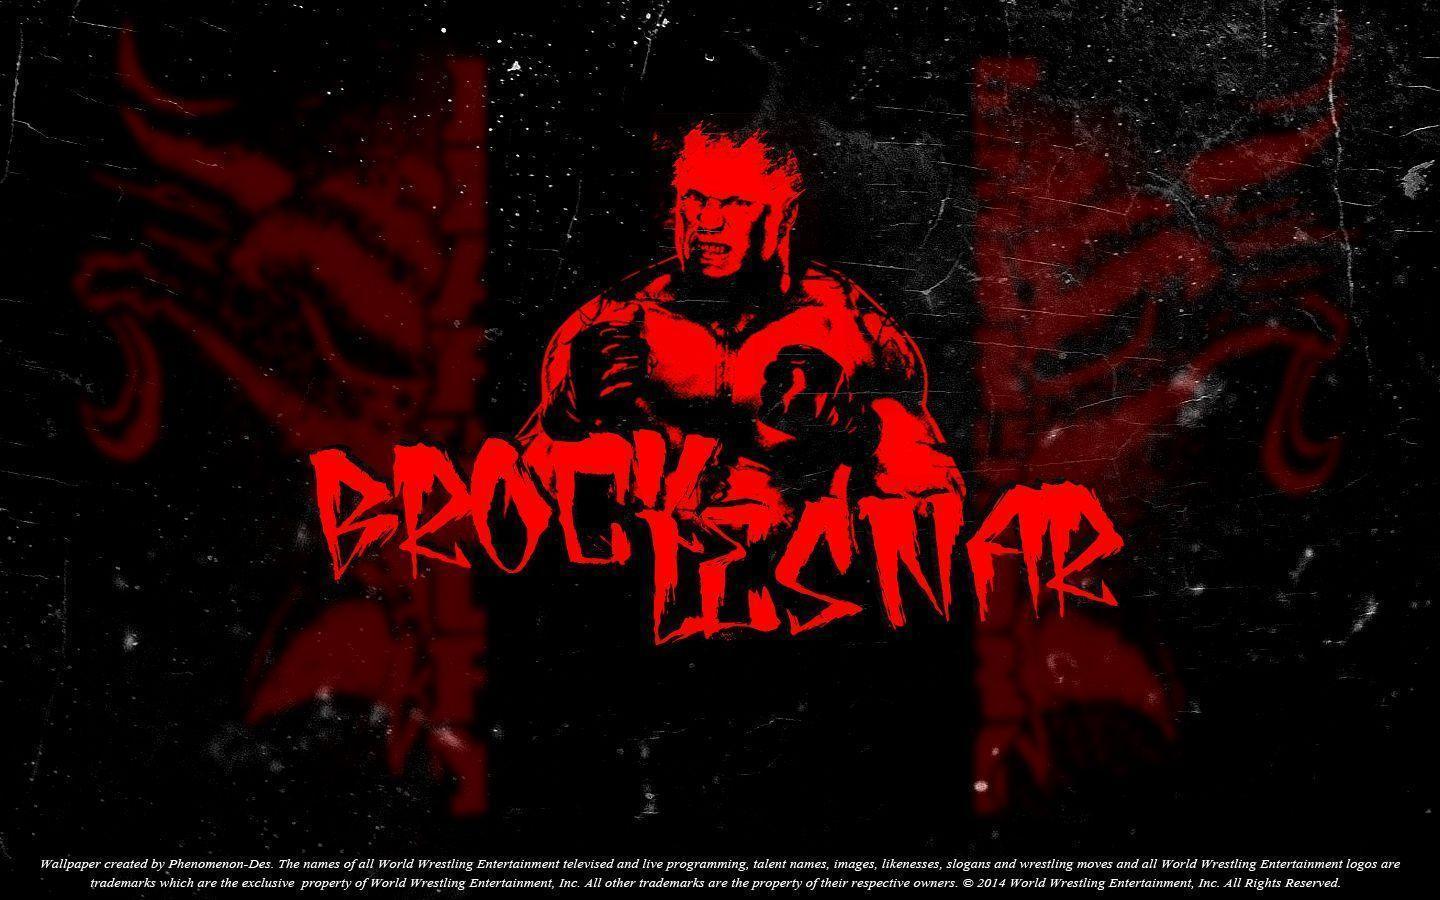 WWE Immortals Poster By Phenomenon Des